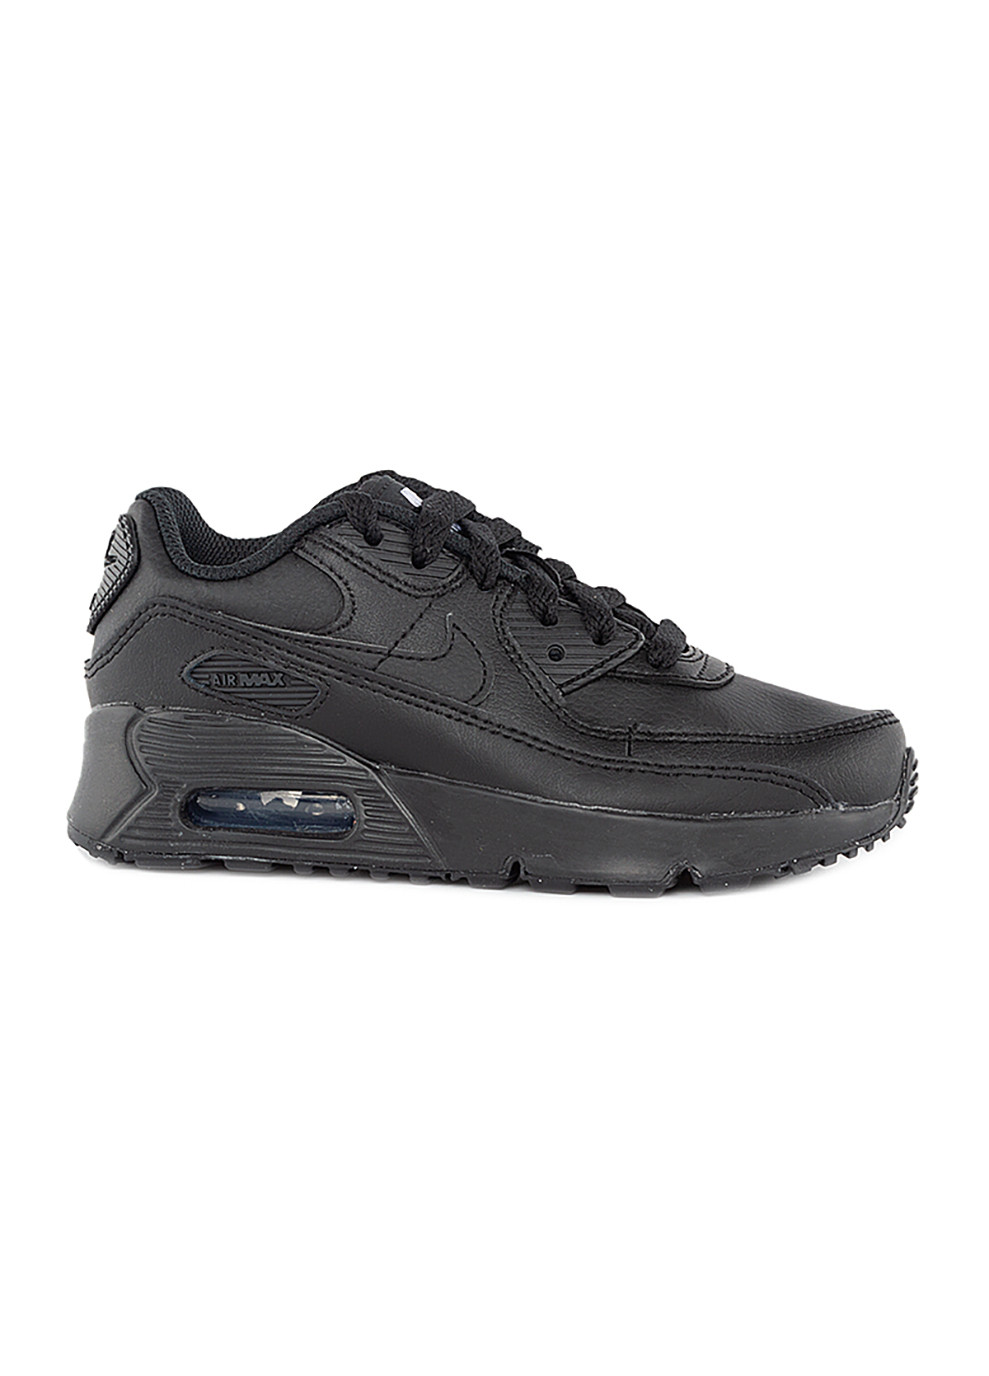 Черные демисезонные детские кроссовки air max 90 ltr (ps) черный Nike